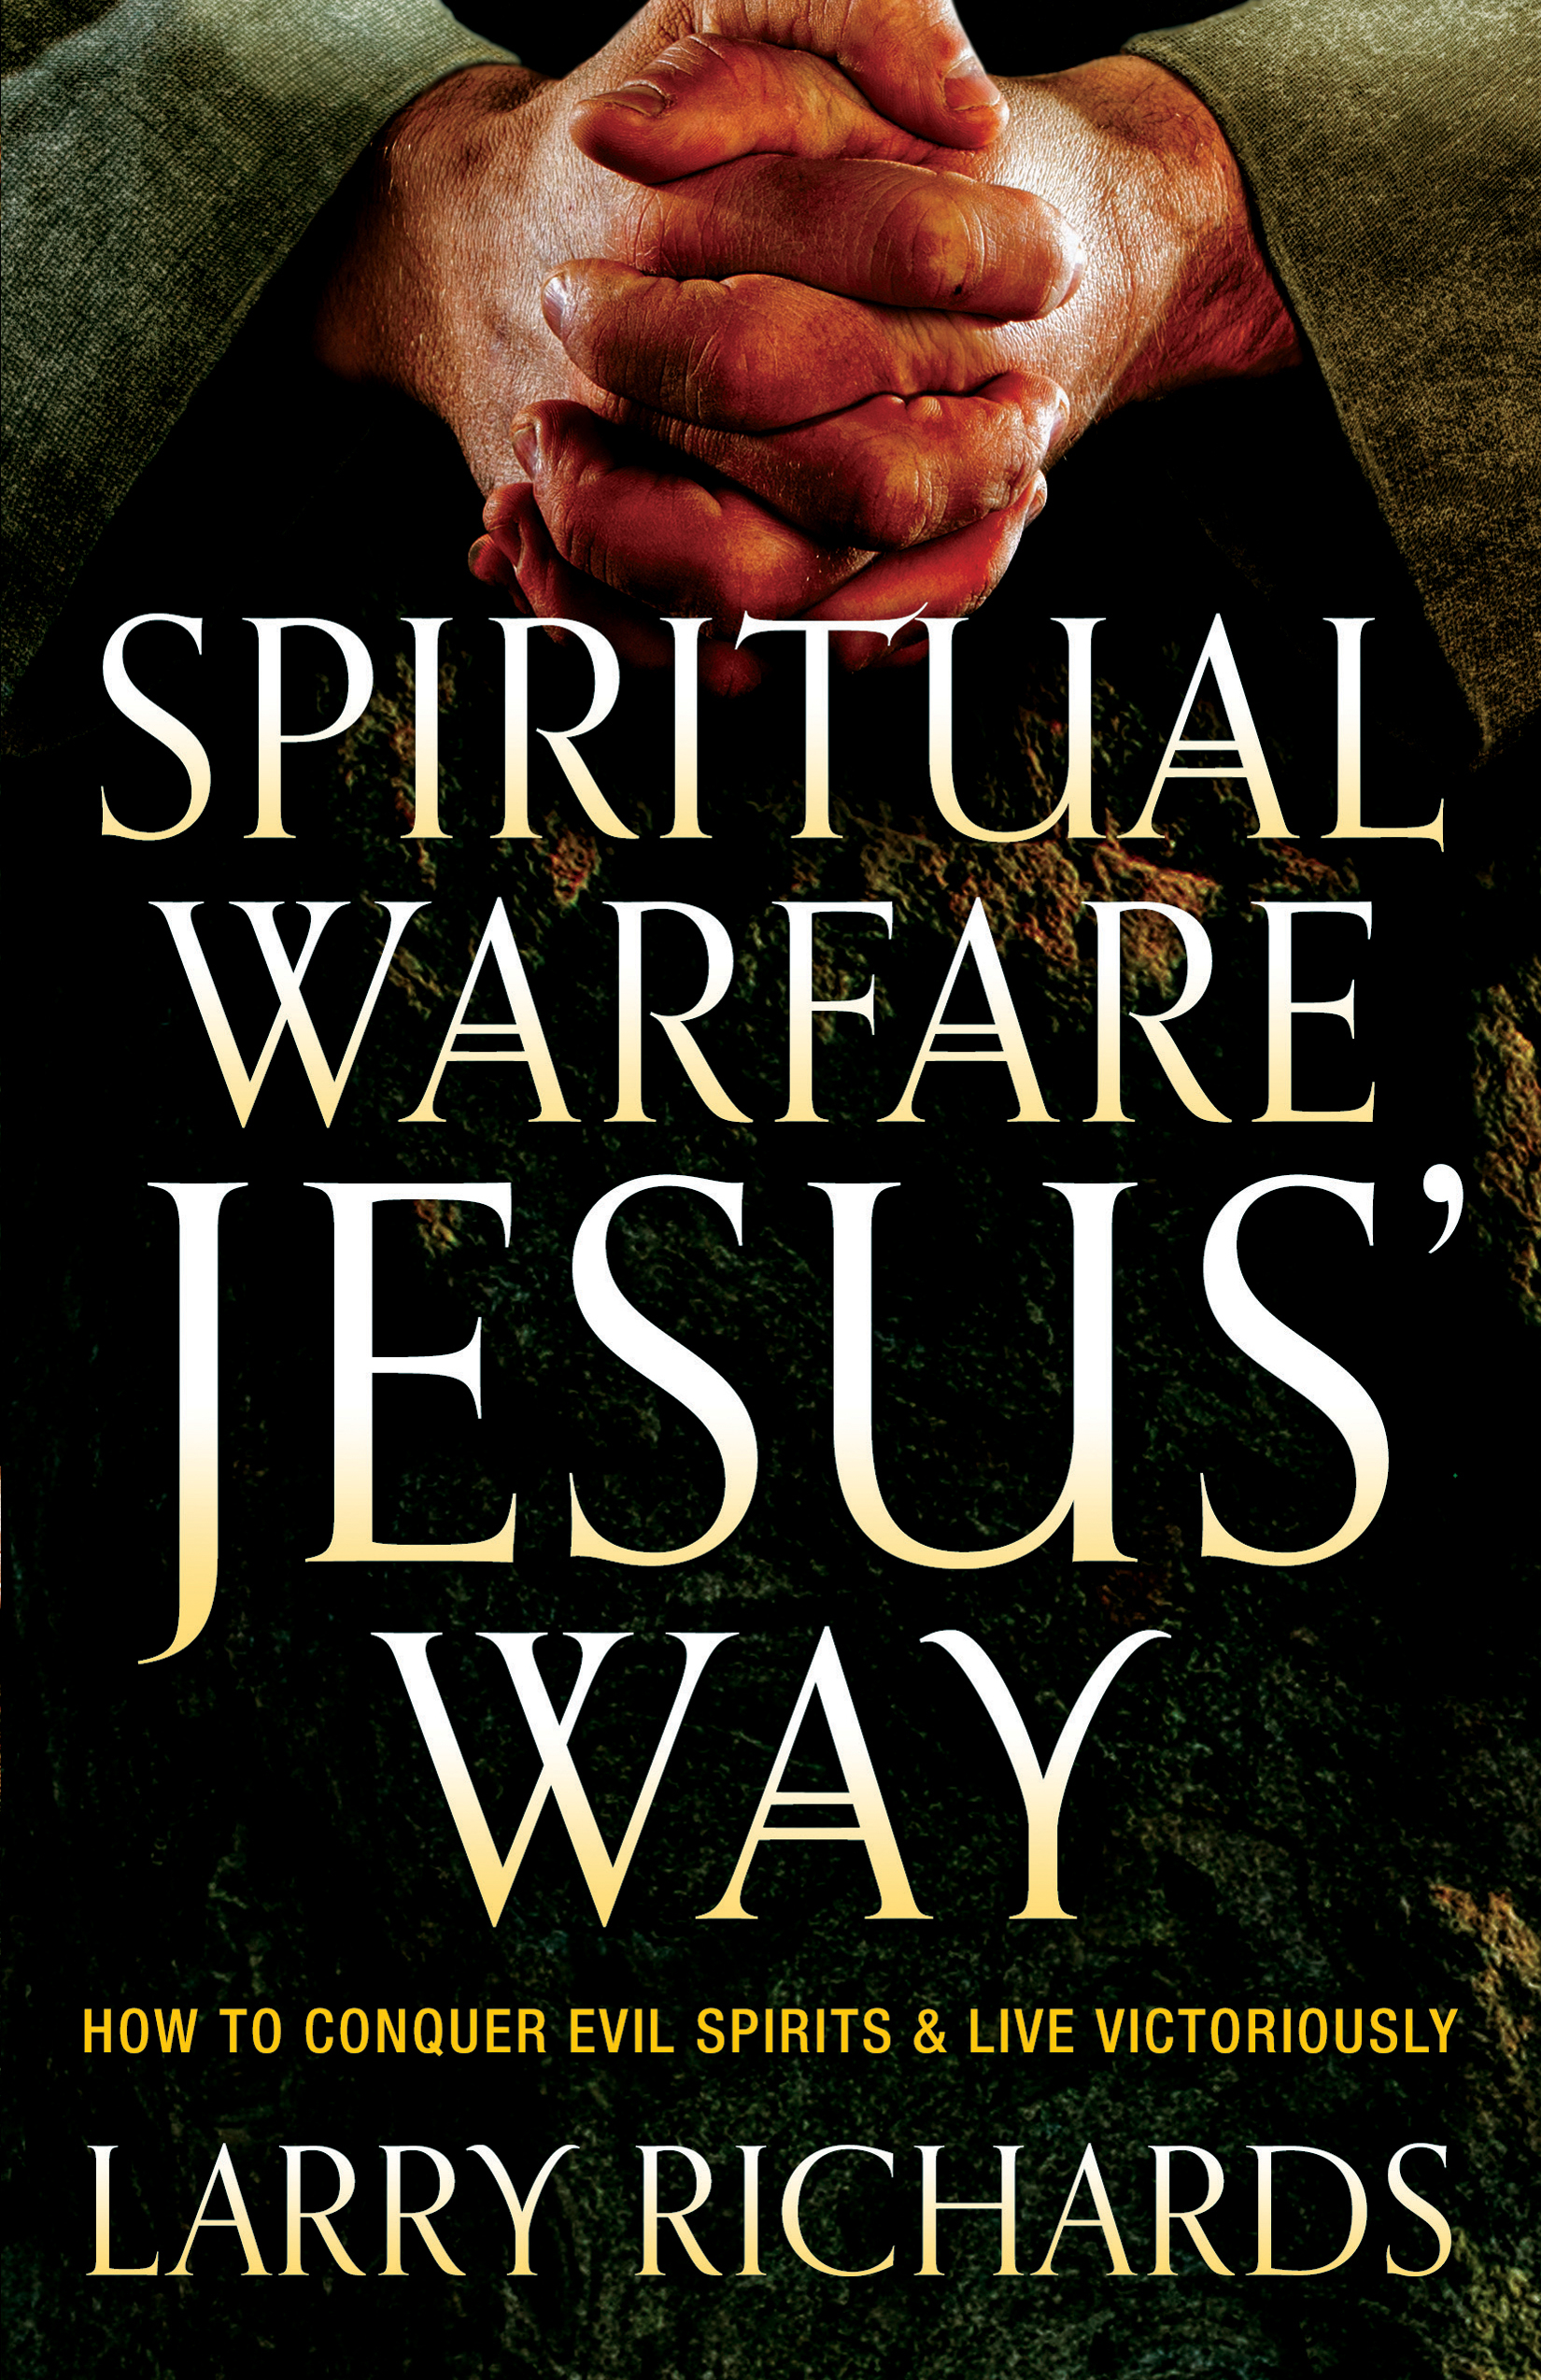 Spiritual Warfare Jesus' Way